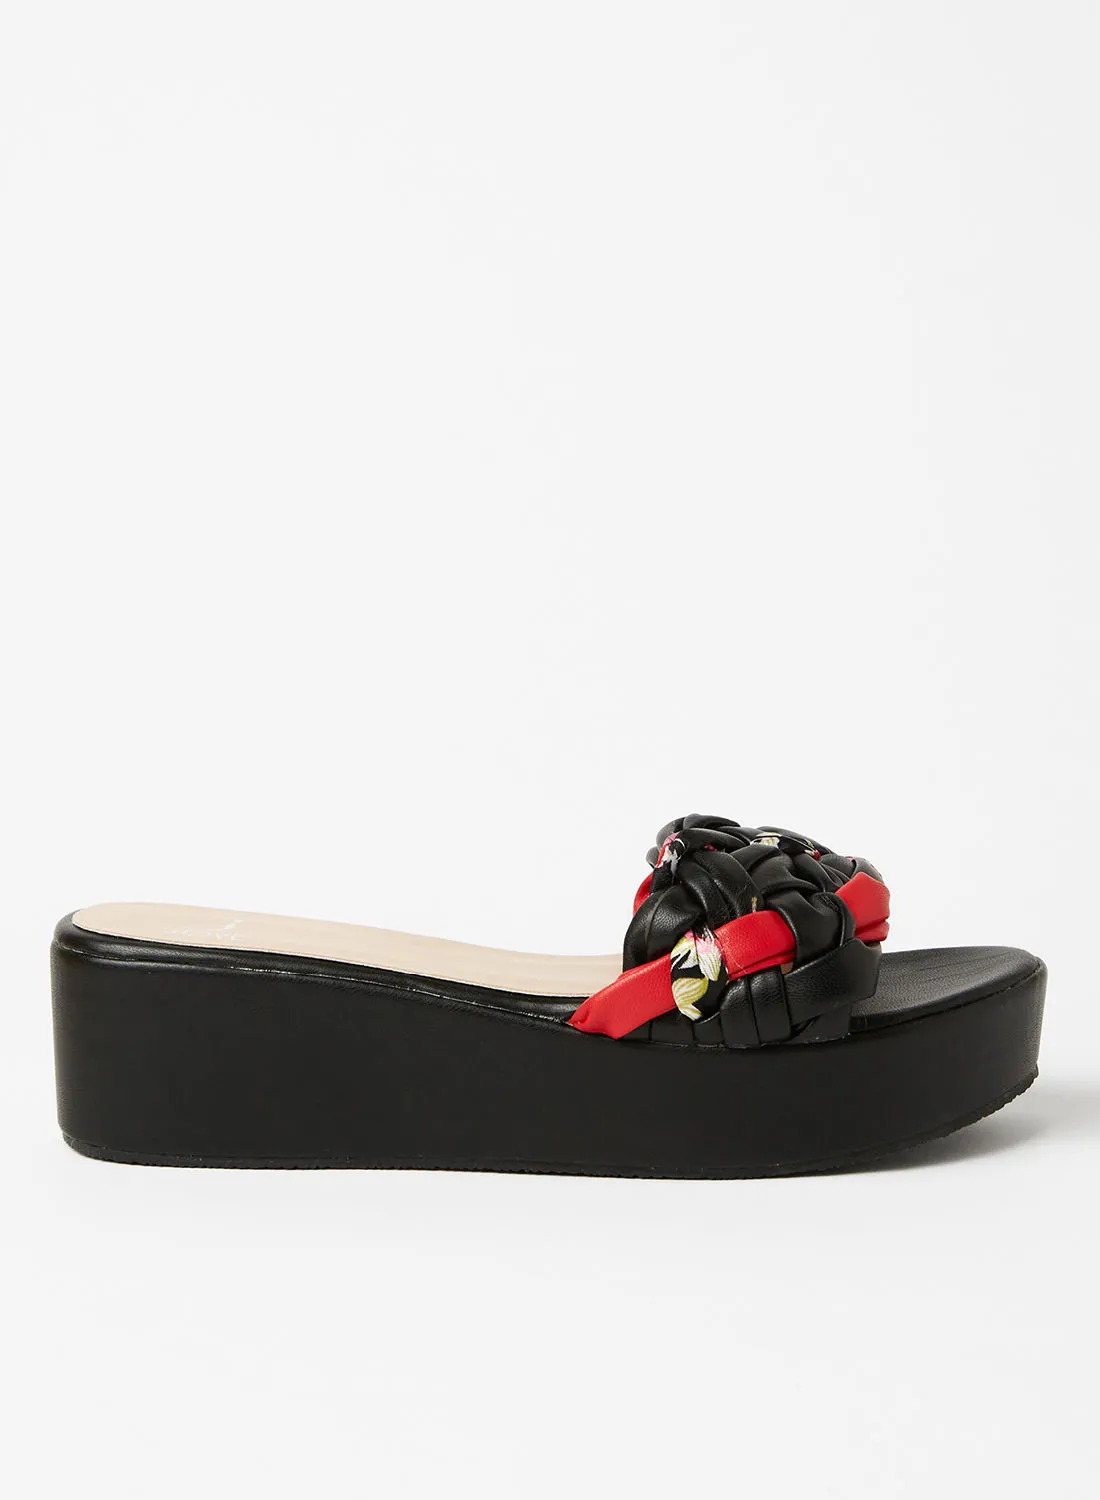 Jove Casual Slip-On Platform Sandals Black/Red